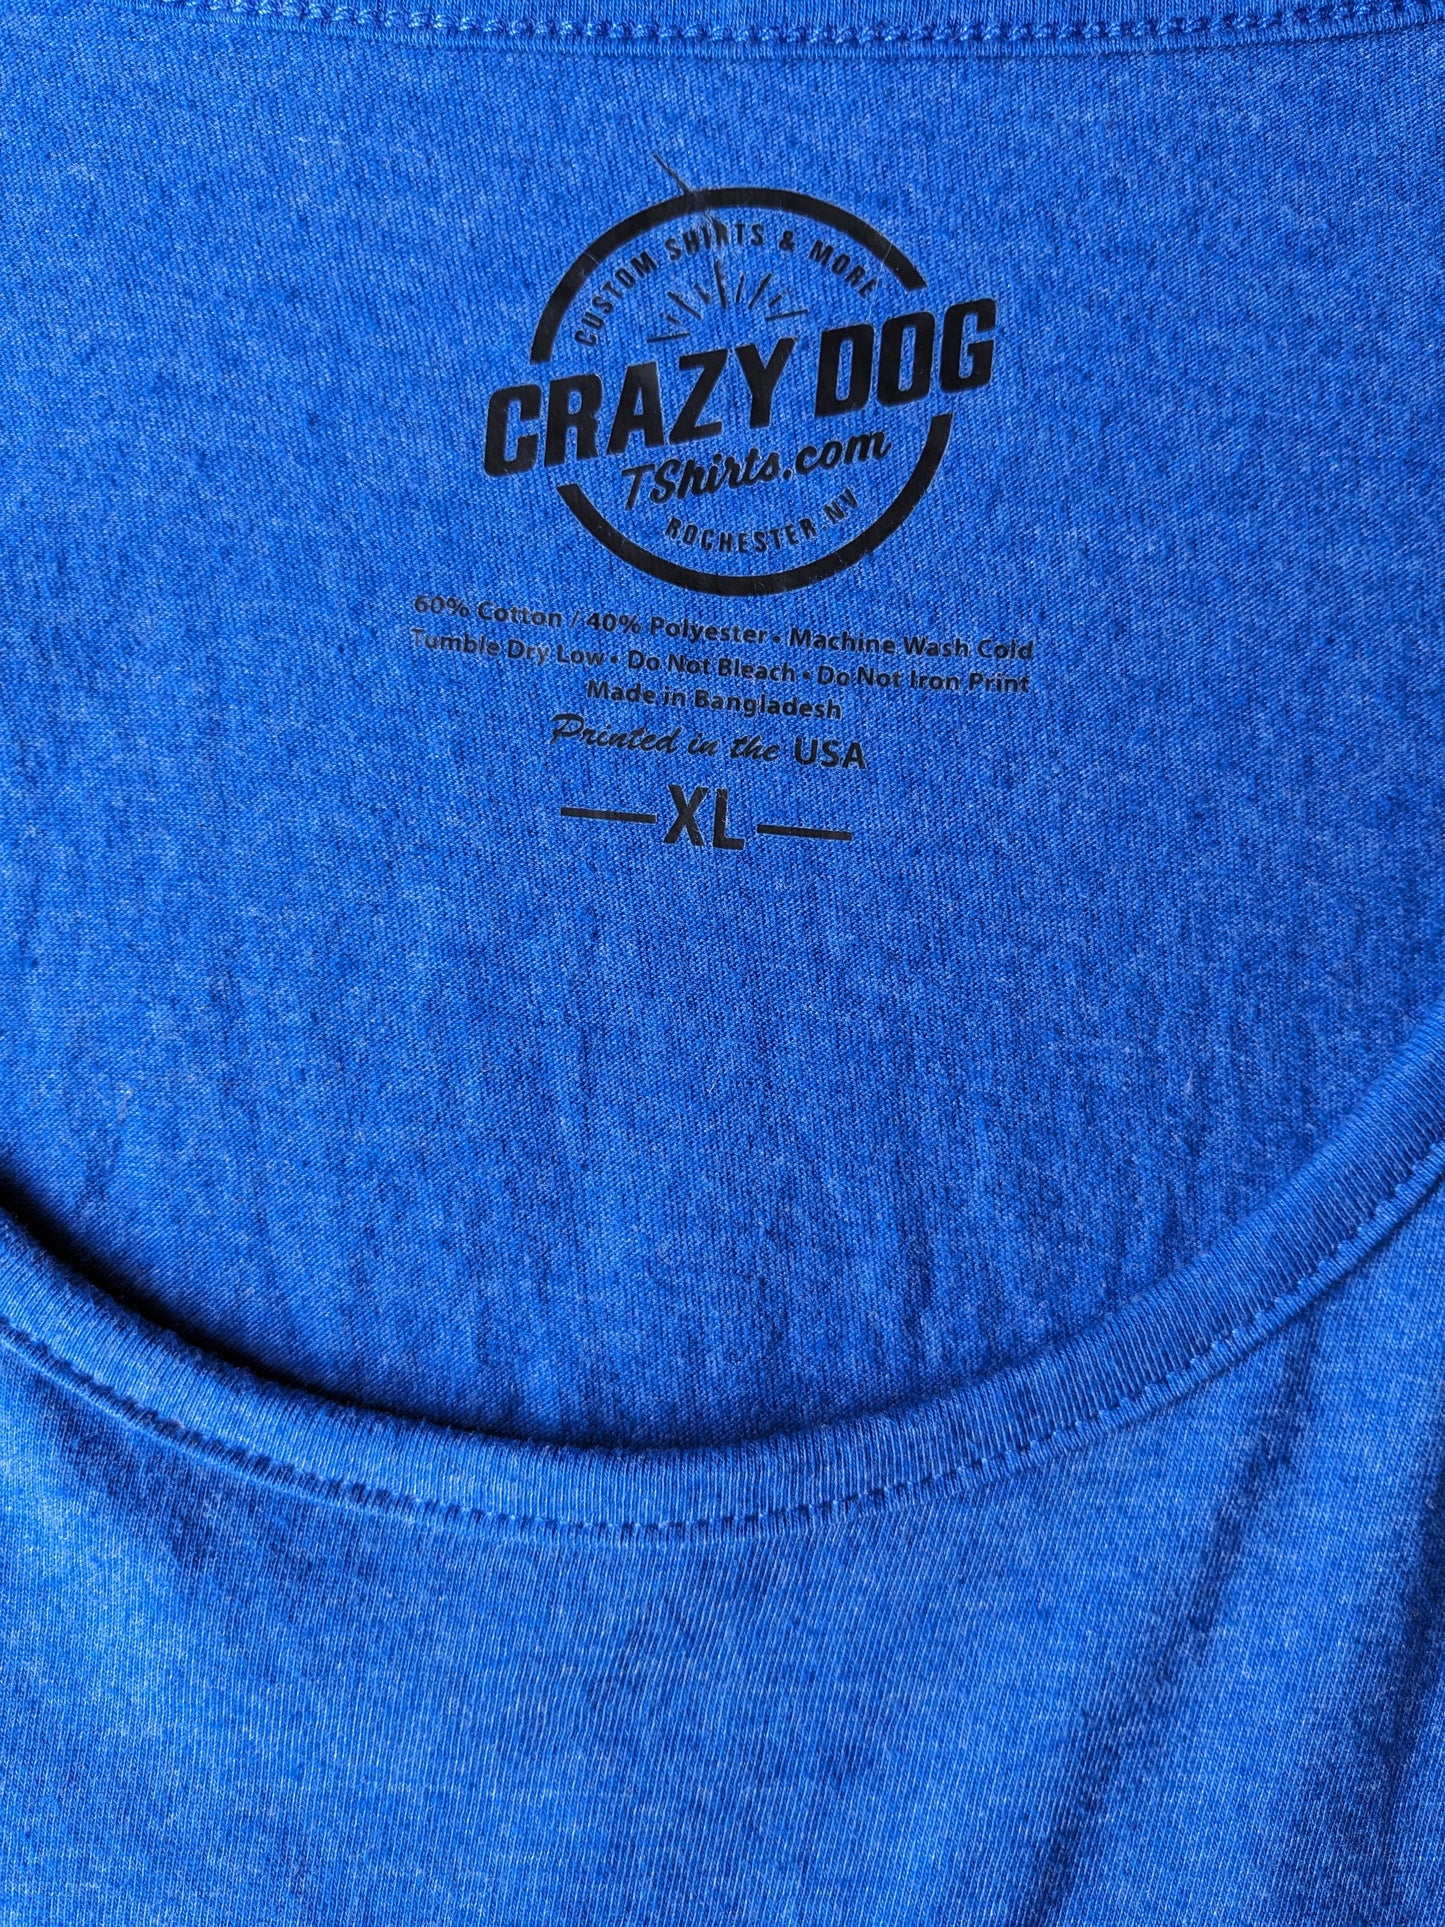 Crazy Dog Singlet. Blauw met oprduk. Maat XL.